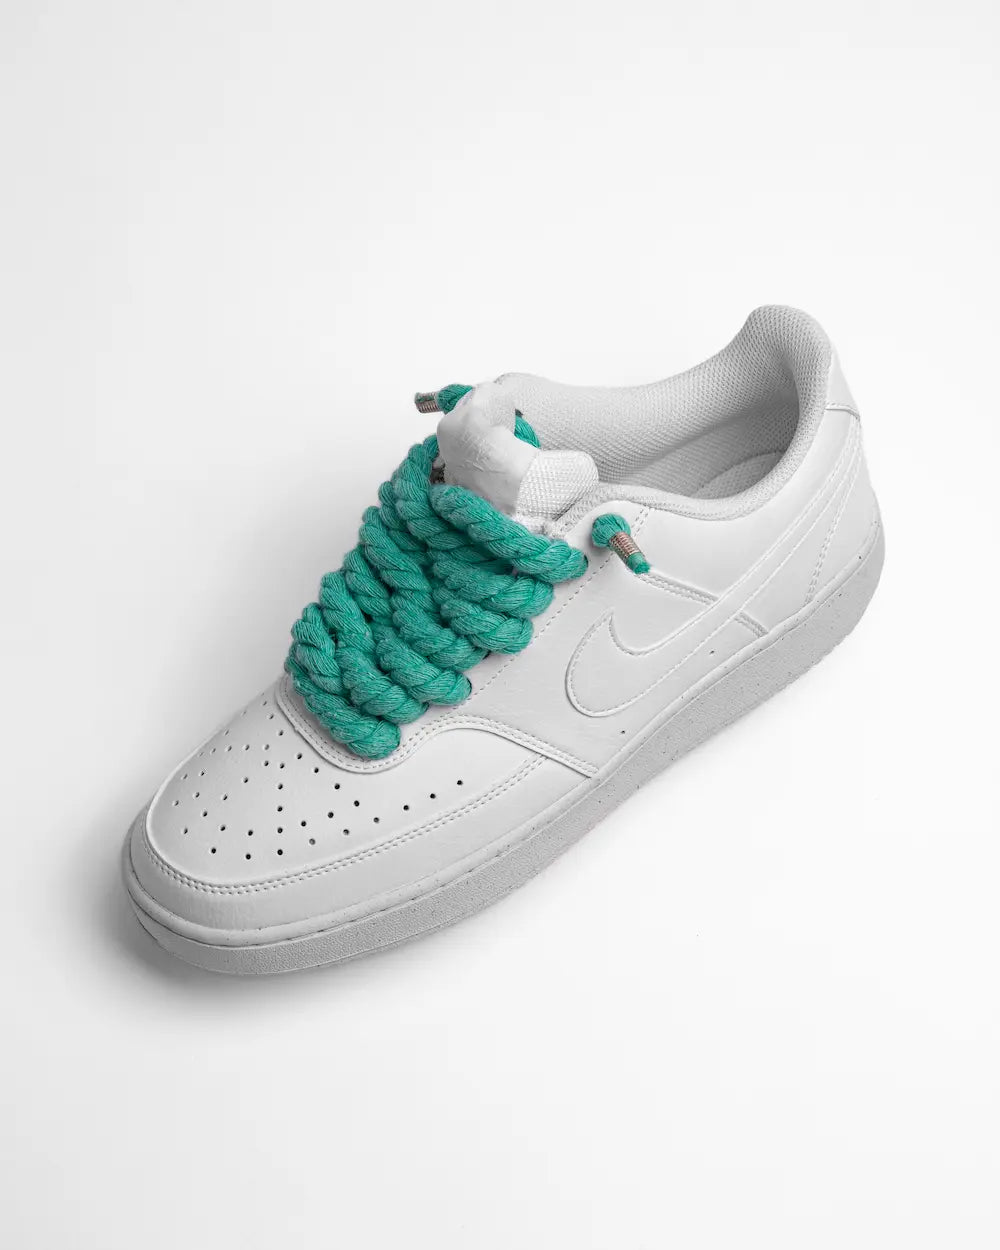 Nike Court Vision personalizzata con lacci in corda verde acqua